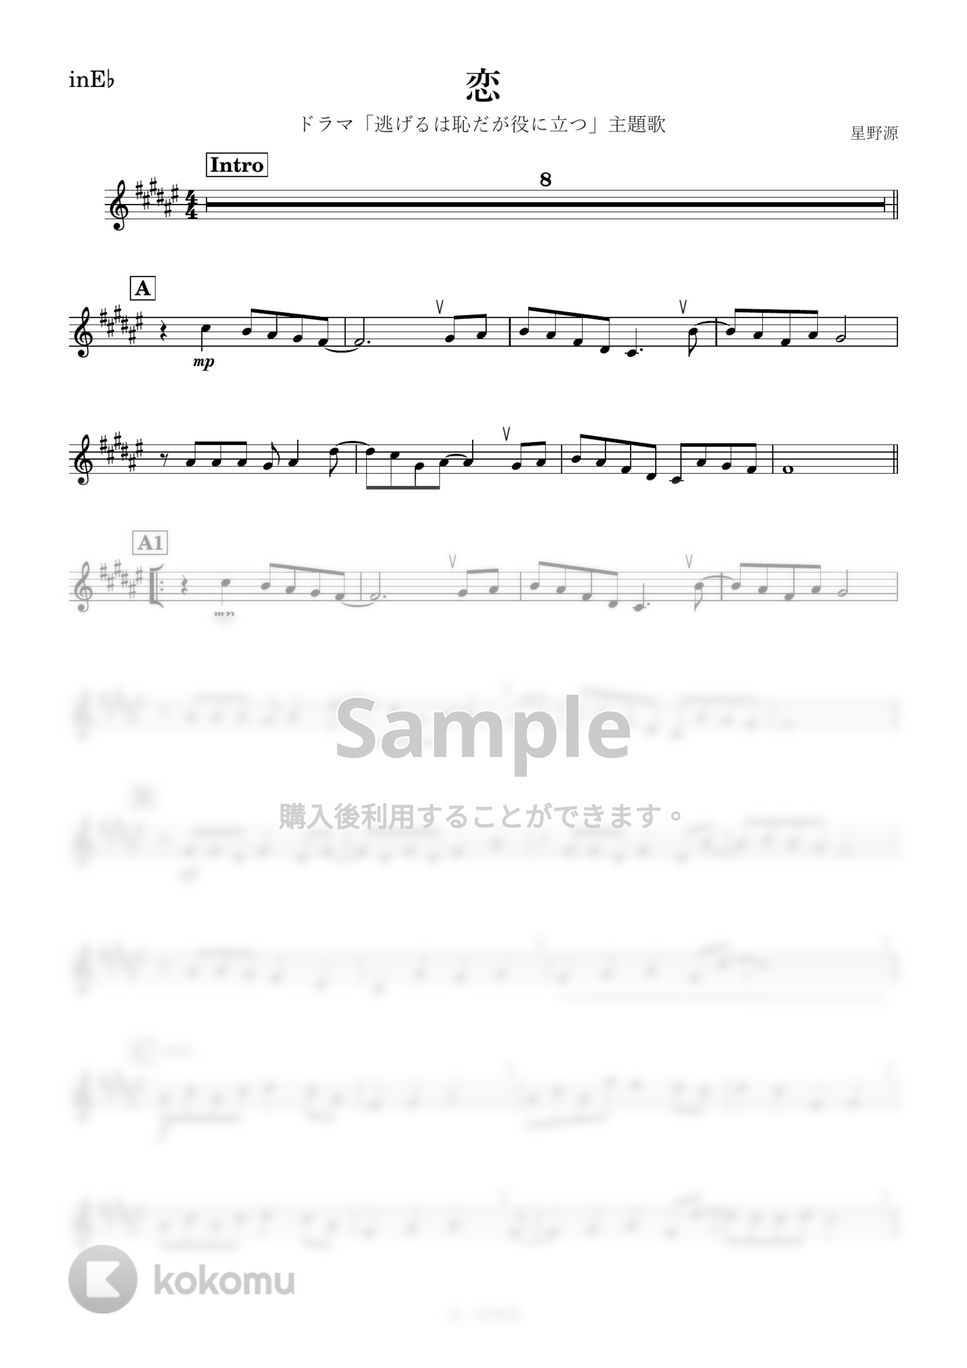 星野源 - 恋 (E♭) by kanamusic